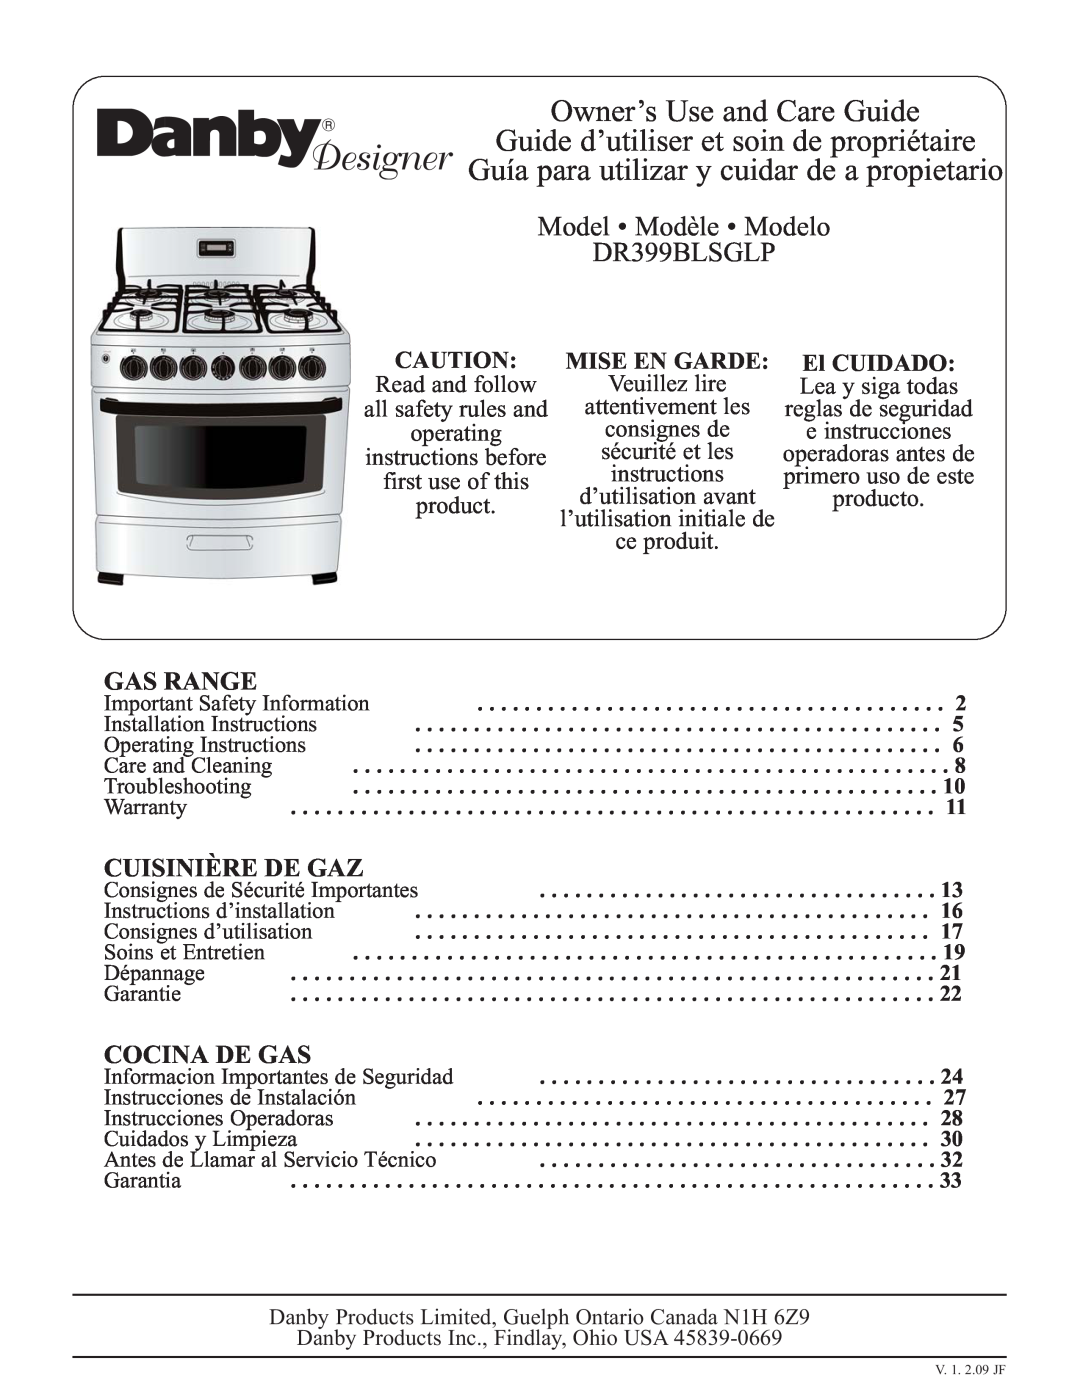 Danby DR399BLSGLP installation instructions Gas Range, Cuisinière De Gaz, Cocina De Gas, Mise En Garde, El CUIDADO 